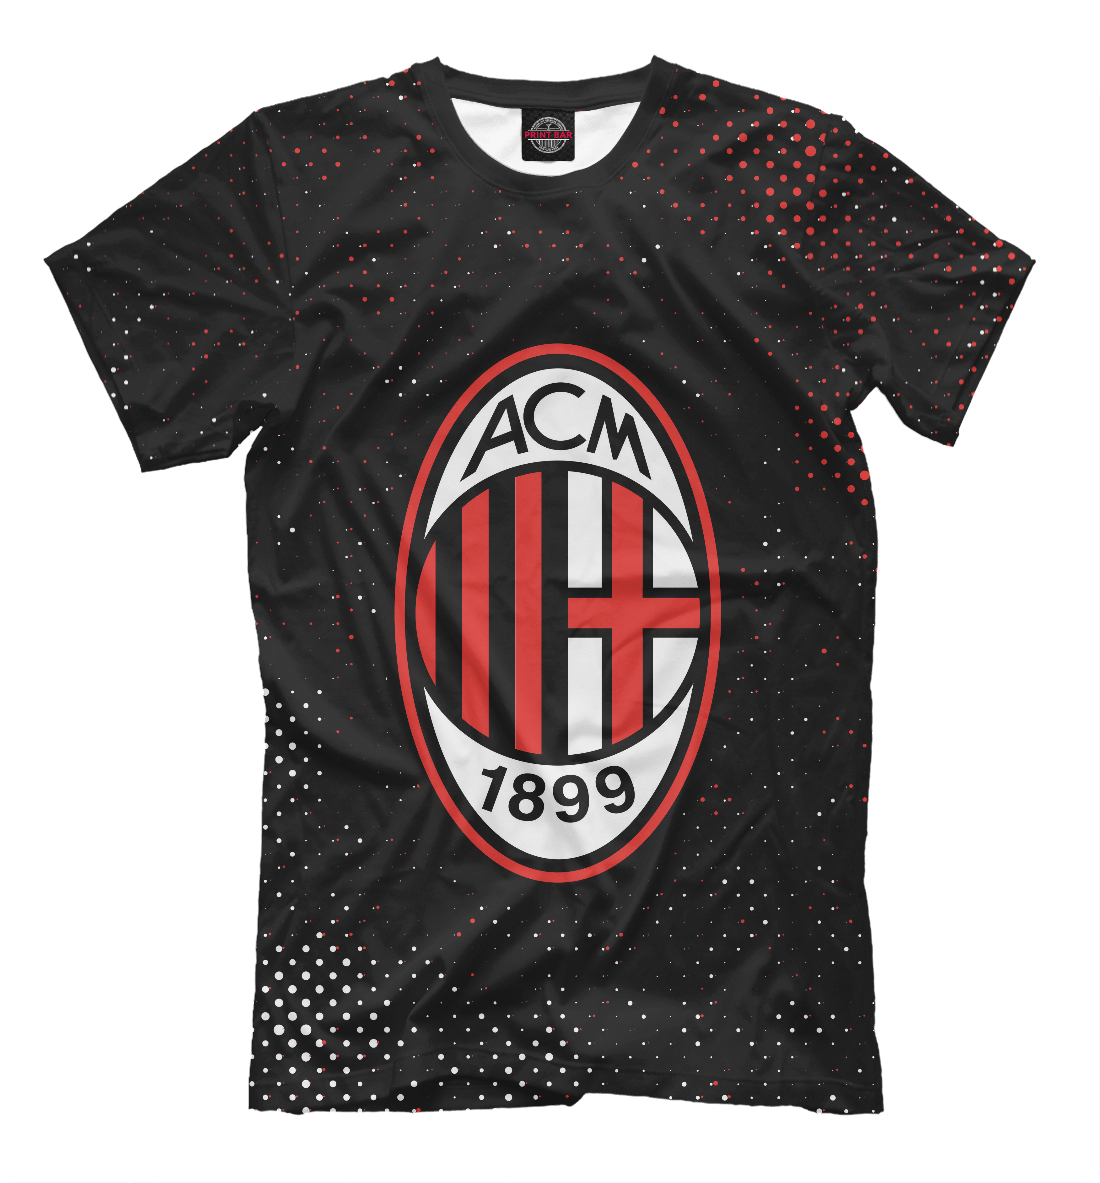 Футболка AC Milan / Милан для мальчиков, артикул: ACM-978207-fut-2mp